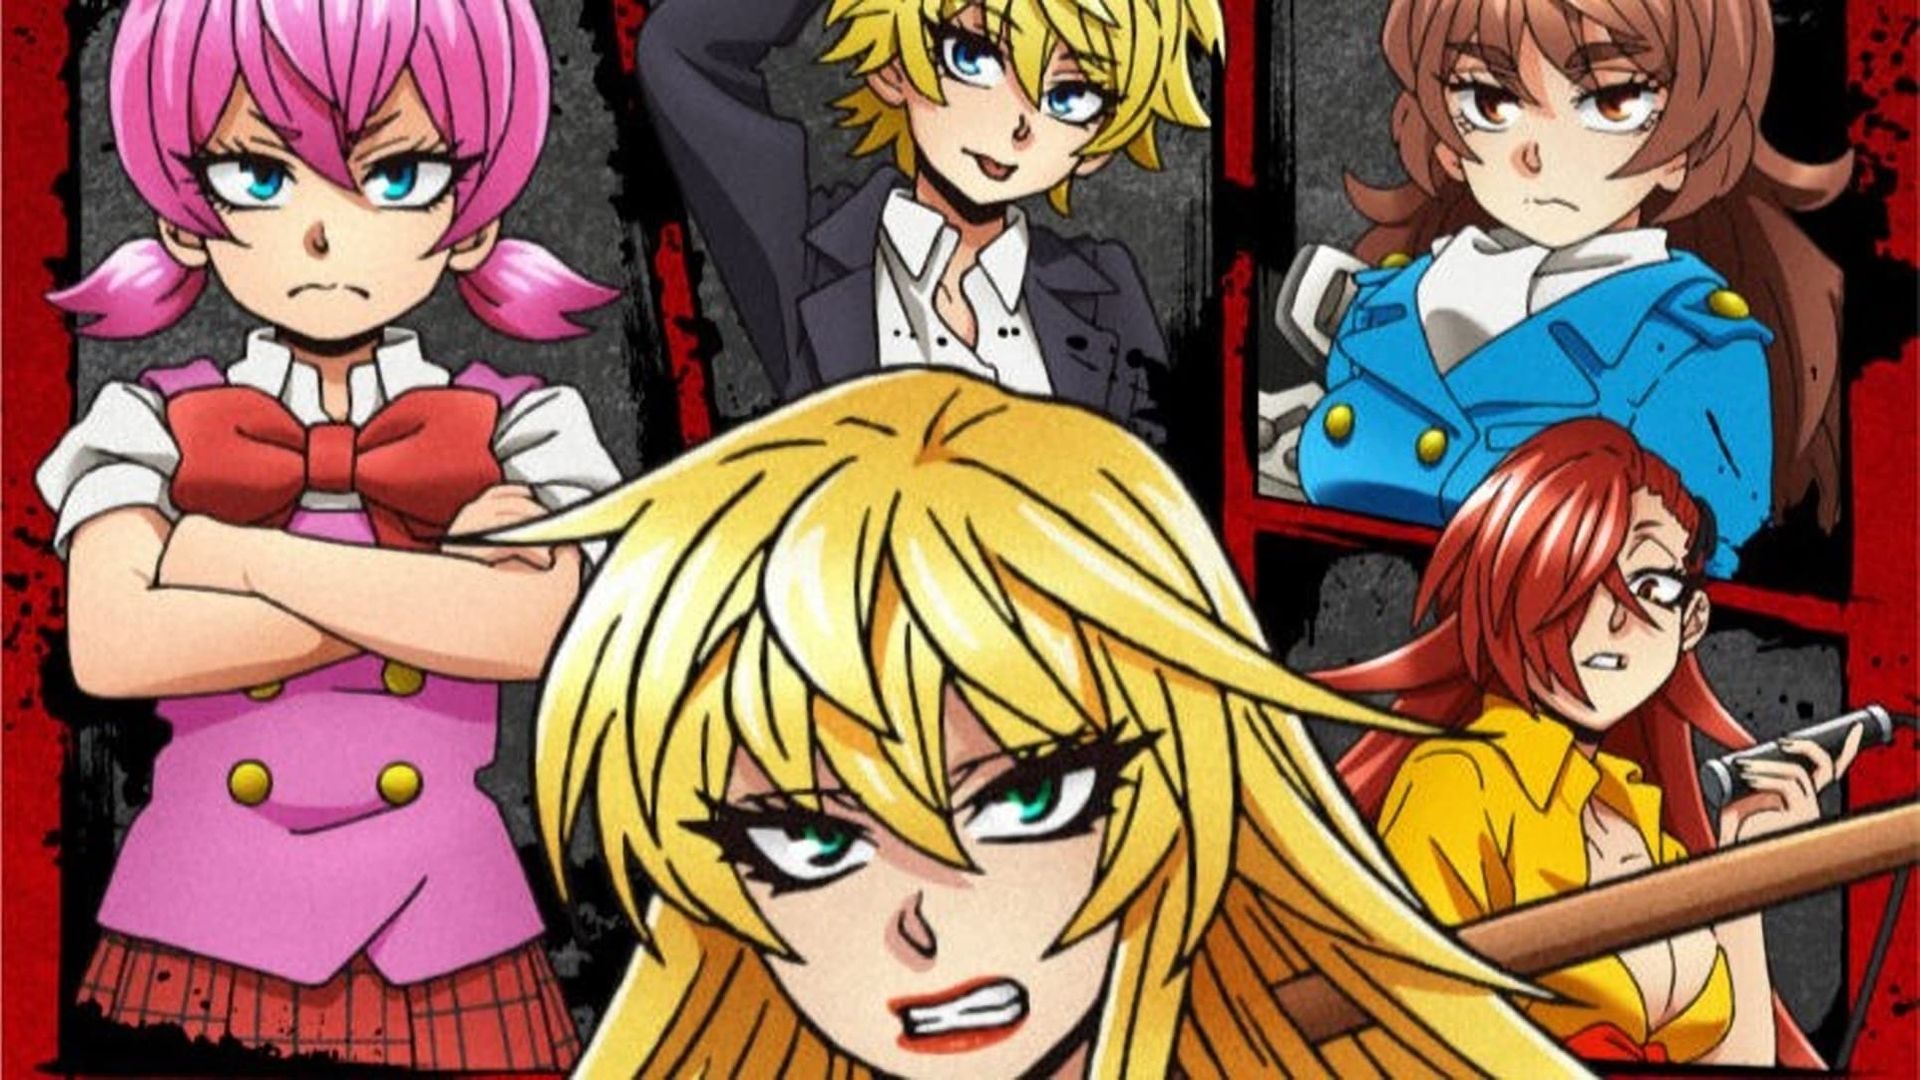 Rokudo's Bad Girls background